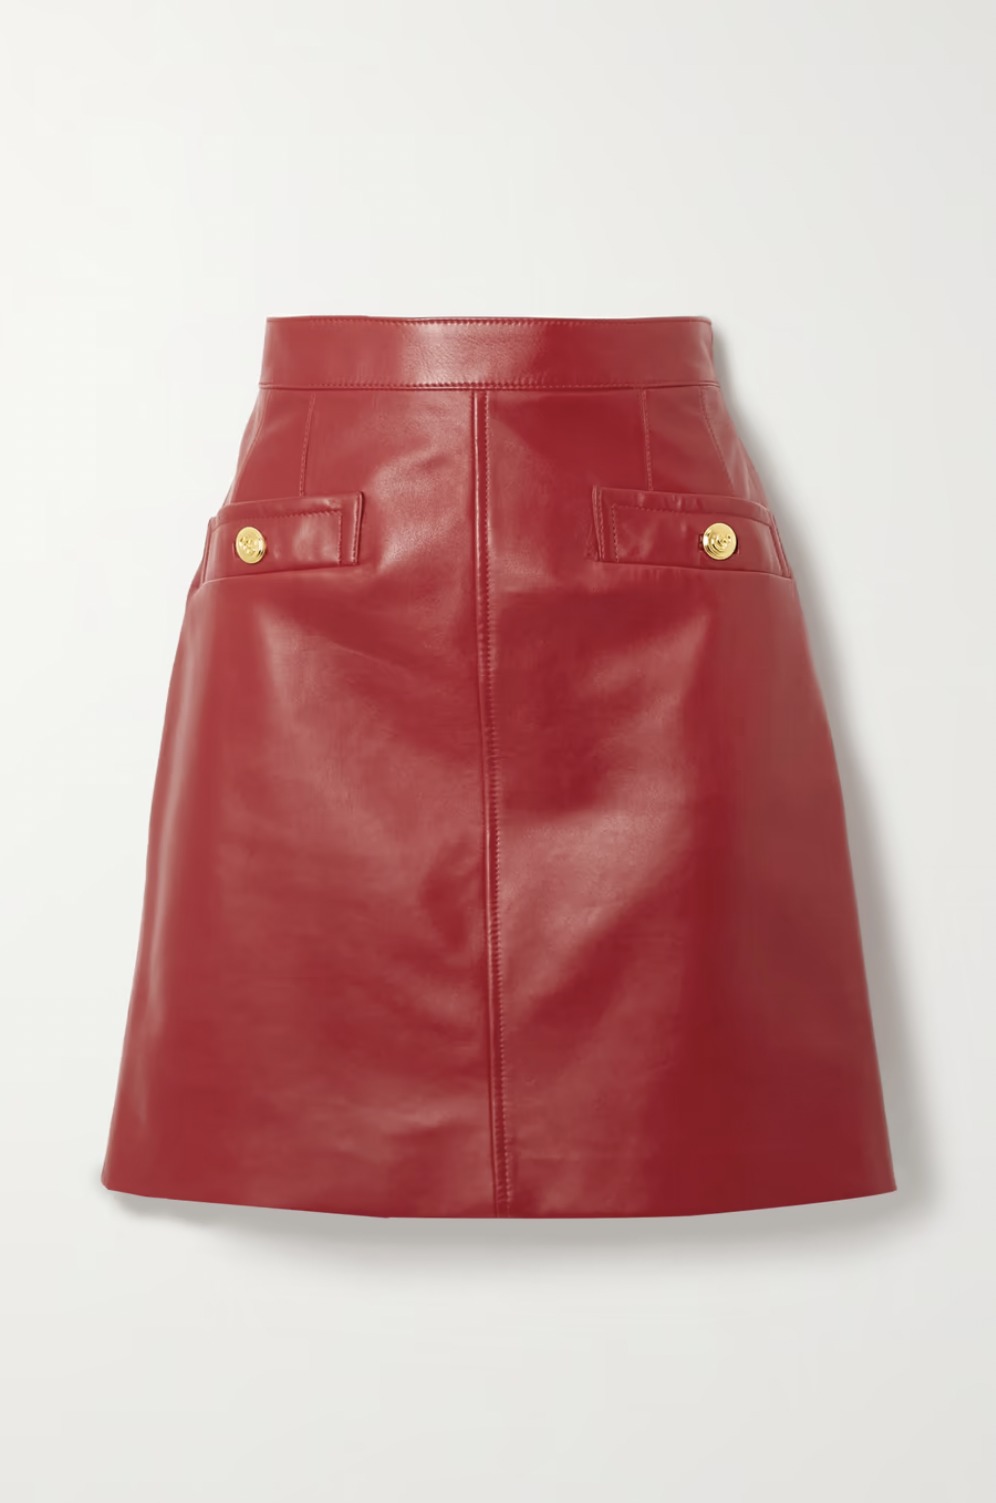 Где купить красную мини-юбку как у Эмилии Кларк?